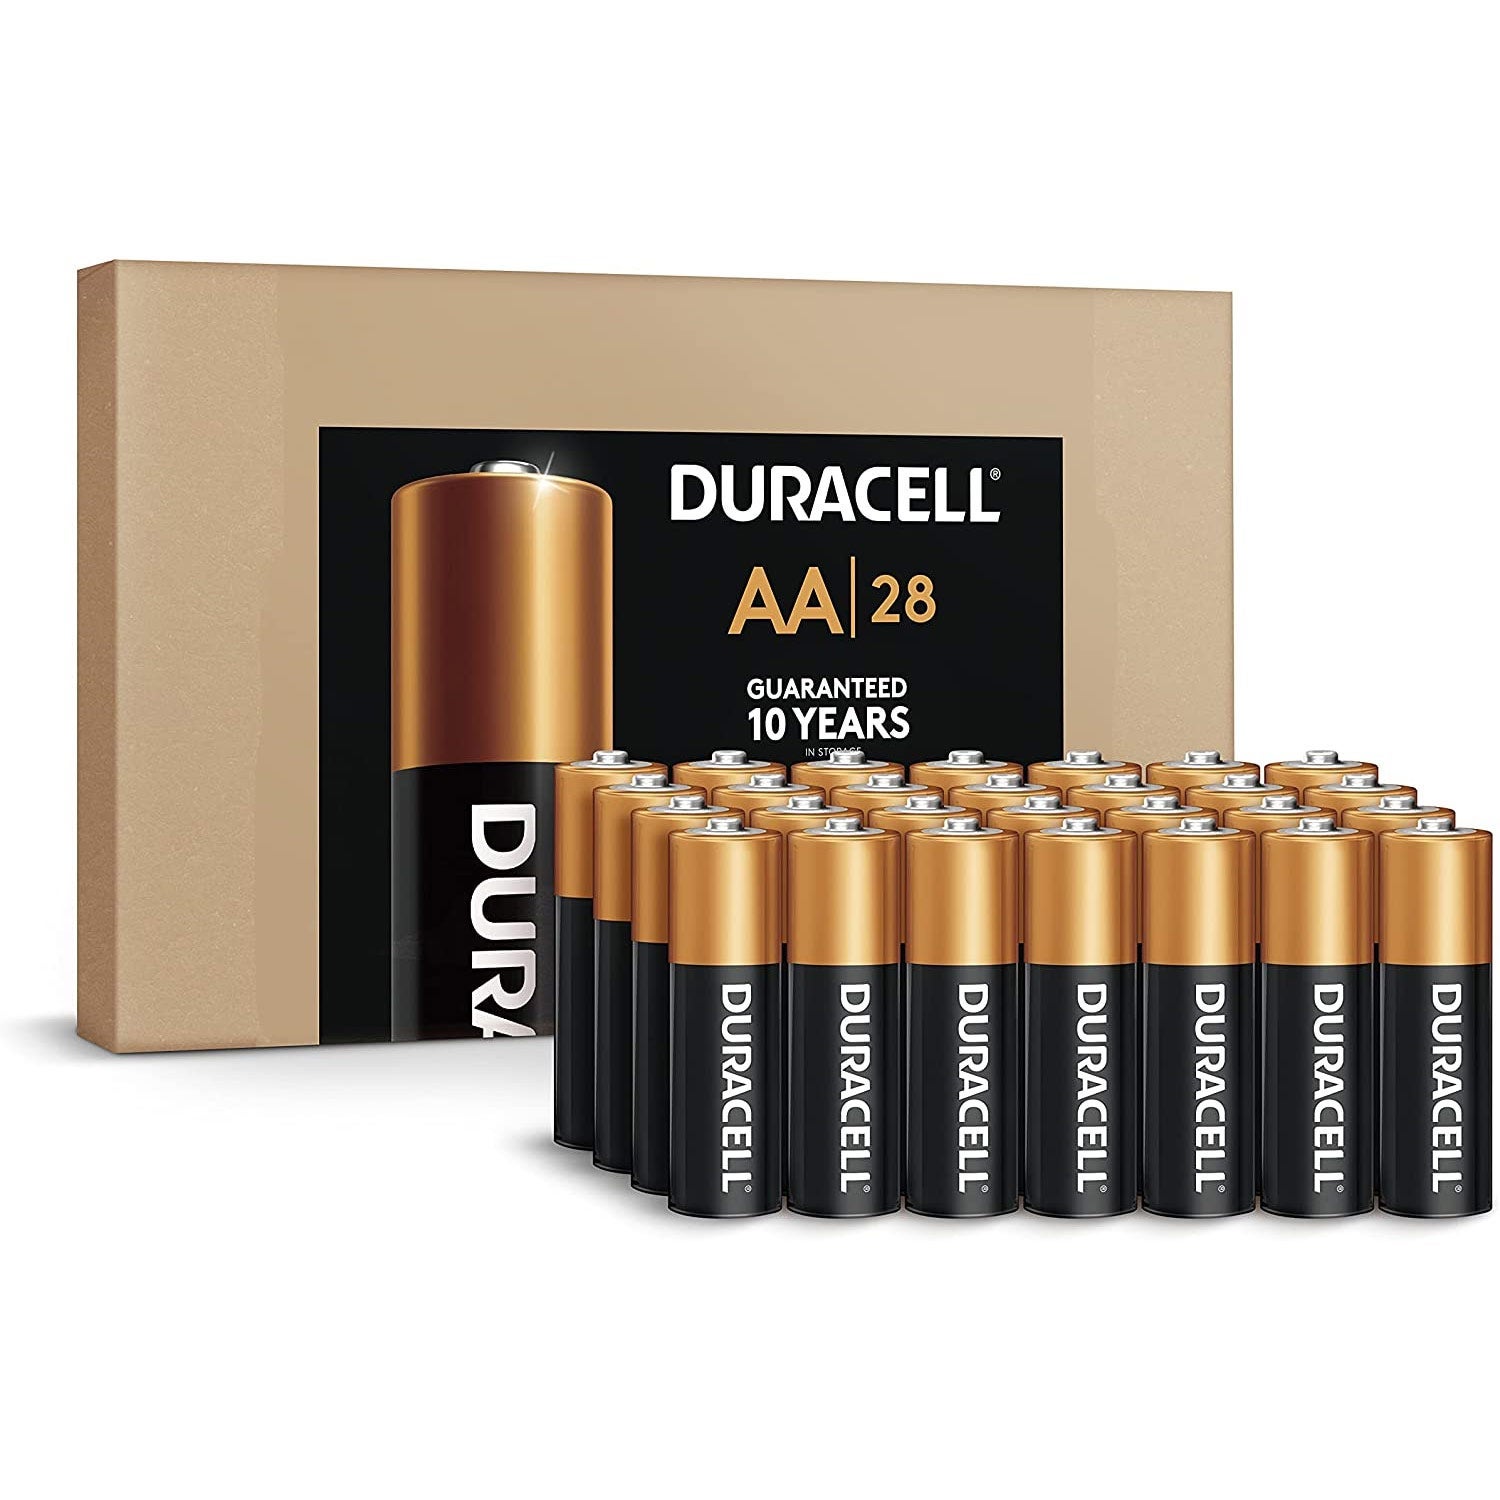 Duracell AA batteries.